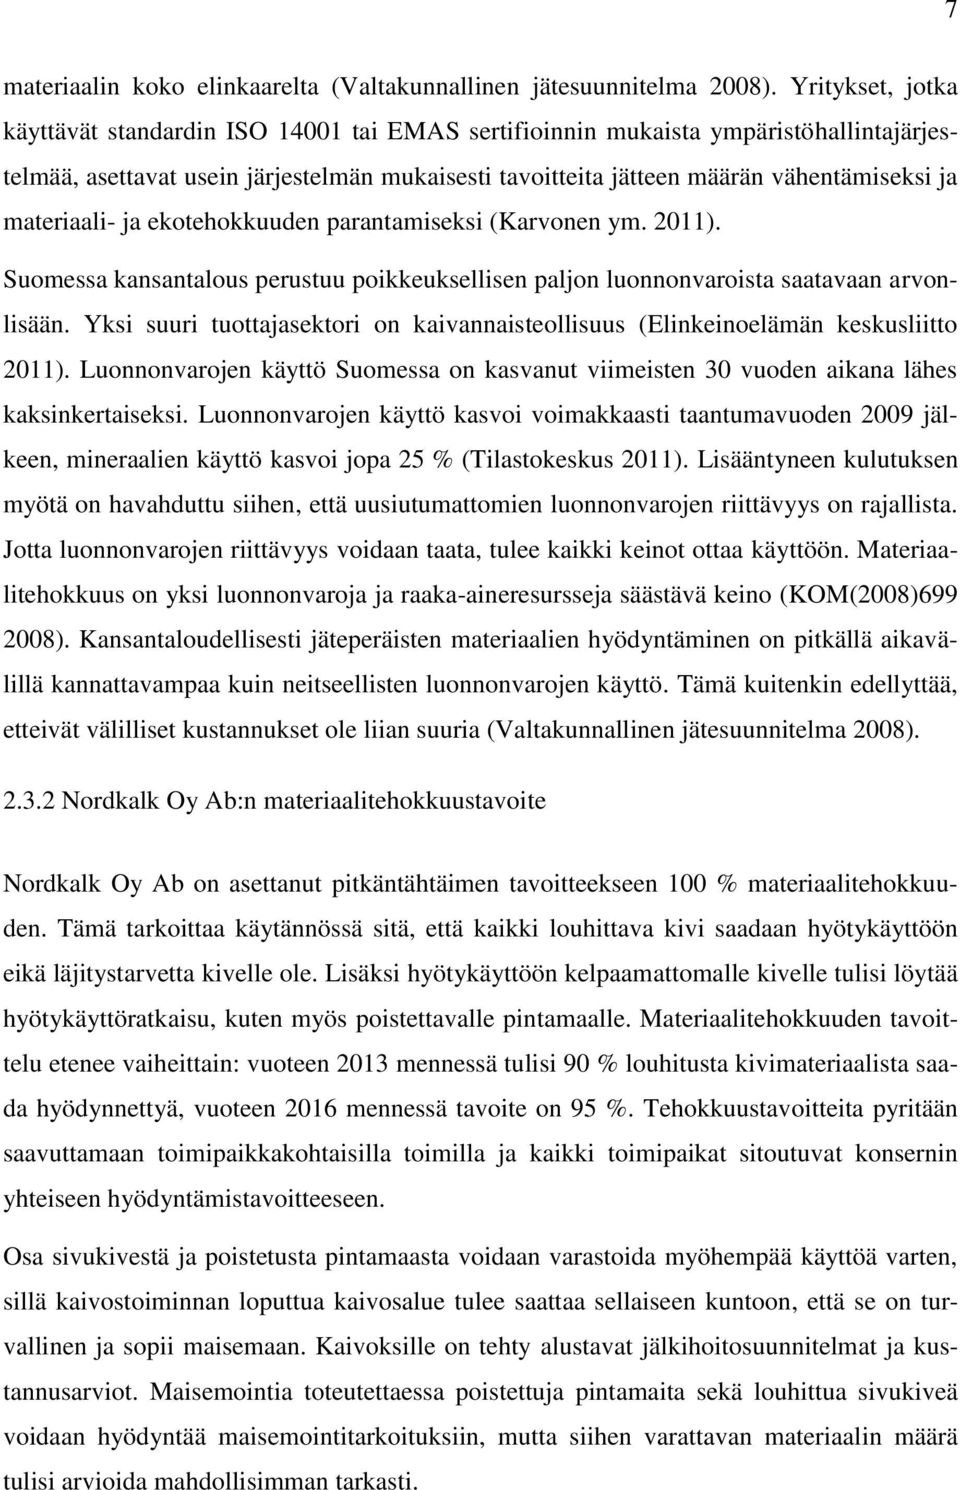 materiaali- ja ekotehokkuuden parantamiseksi (Karvonen ym. 2011). Suomessa kansantalous perustuu poikkeuksellisen paljon luonnonvaroista saatavaan arvonlisään.